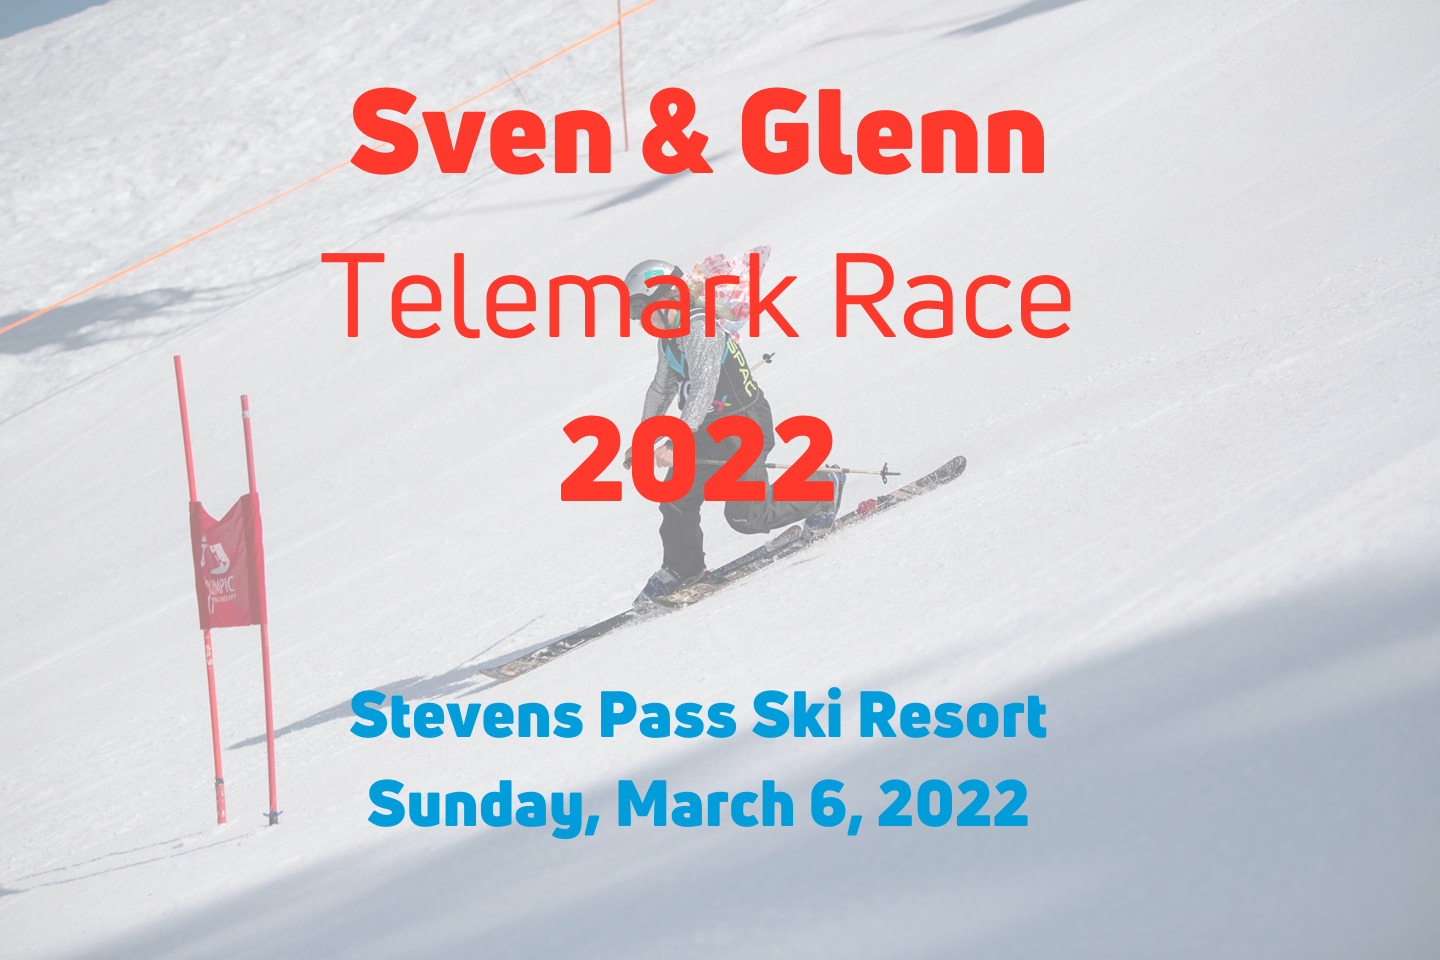 Sven & Glenn Telemark Race 2022